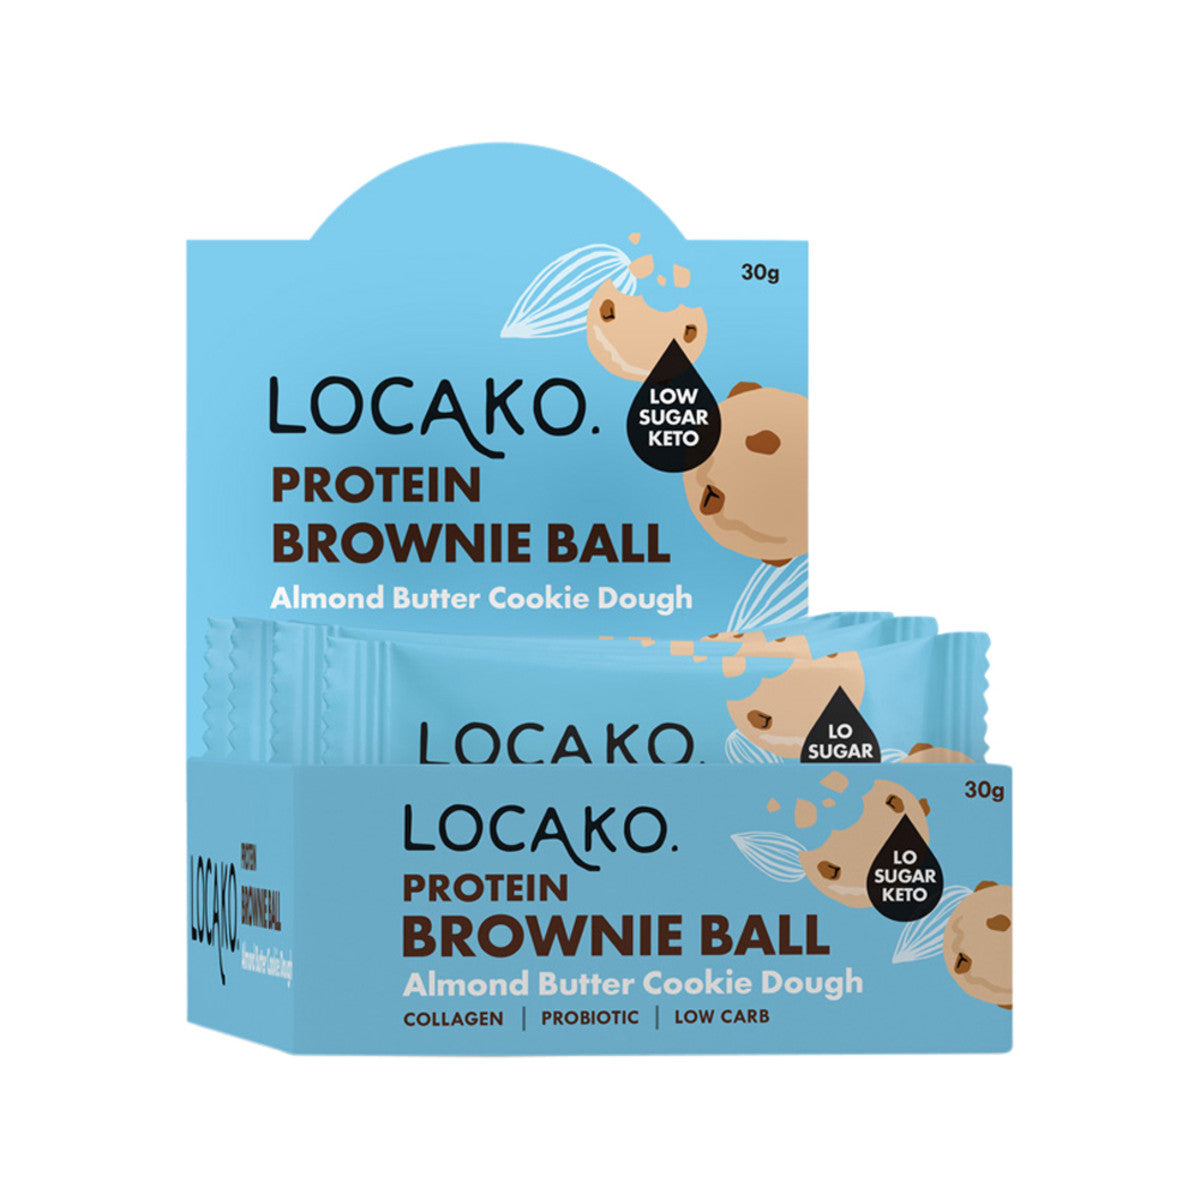 Locako Brown Ball Prot Almond Butter Cookie Dough 30g x 10 Disp